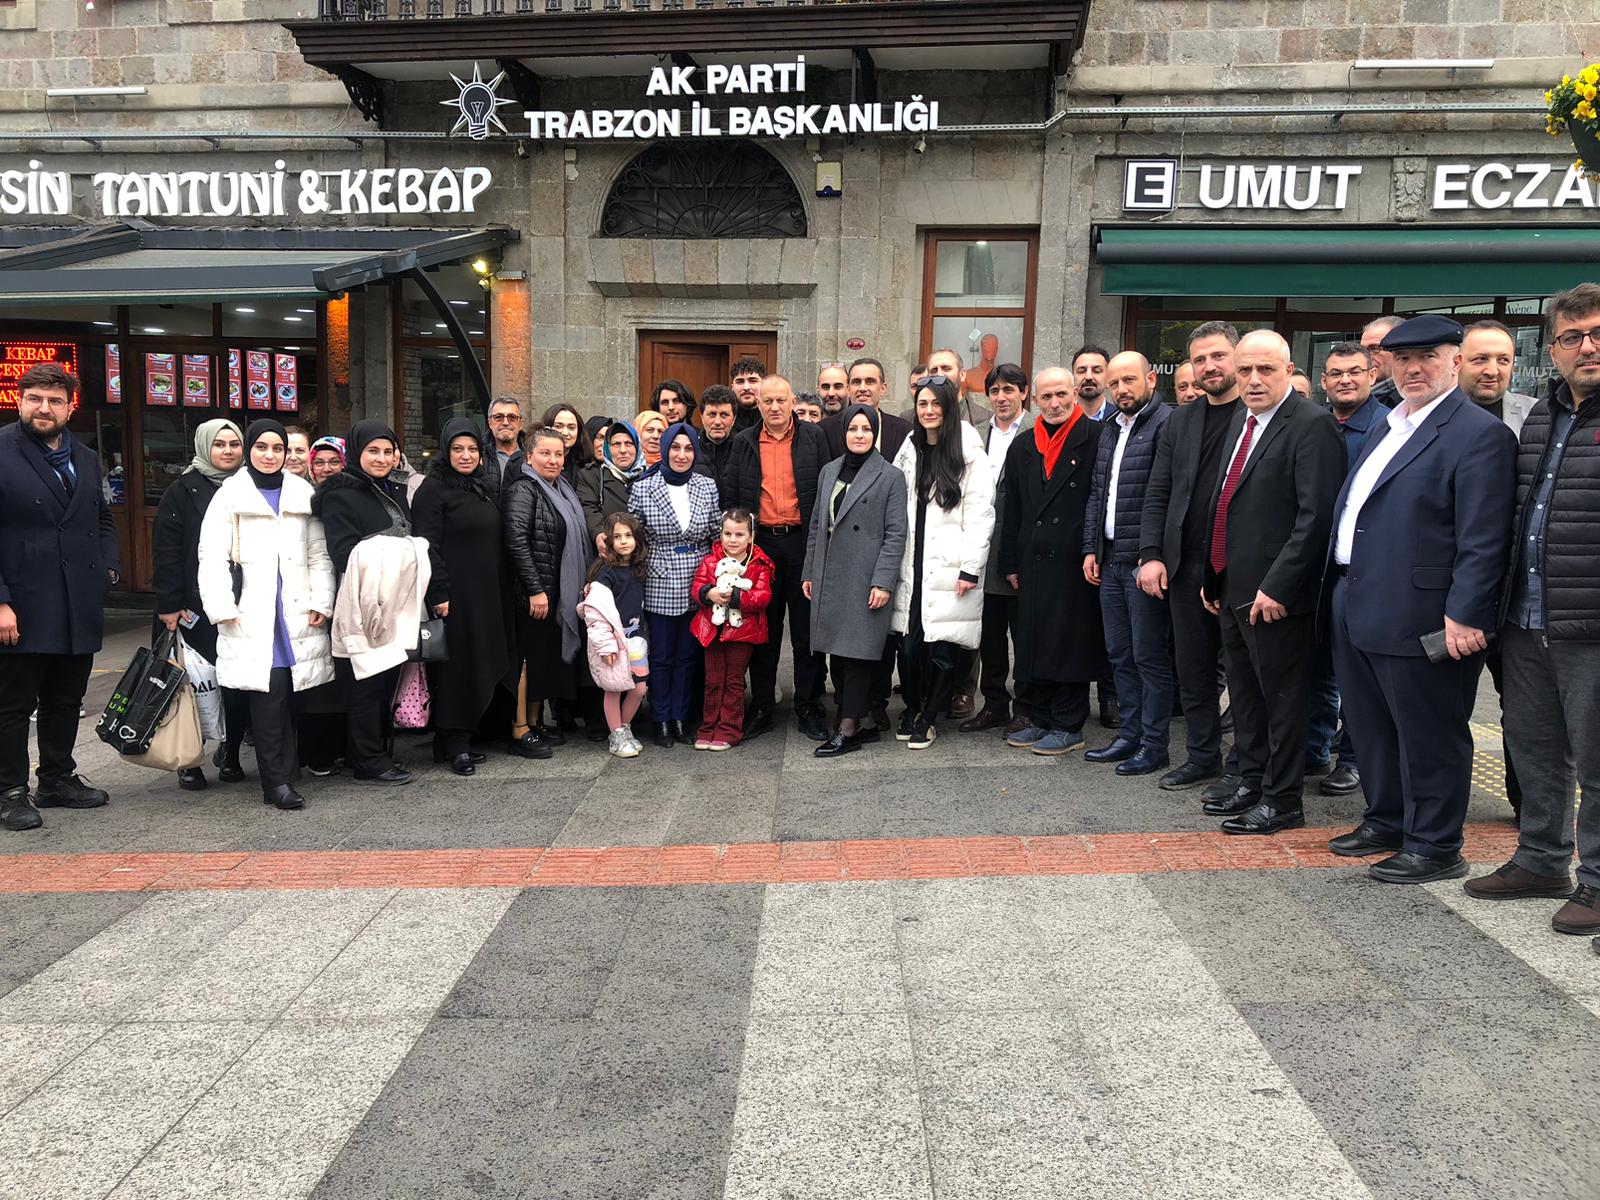 AK Parti Trabzon İl Başkan Yardımcısı Seda Taflan Milletvekilliği aday adaylığını açıkladı